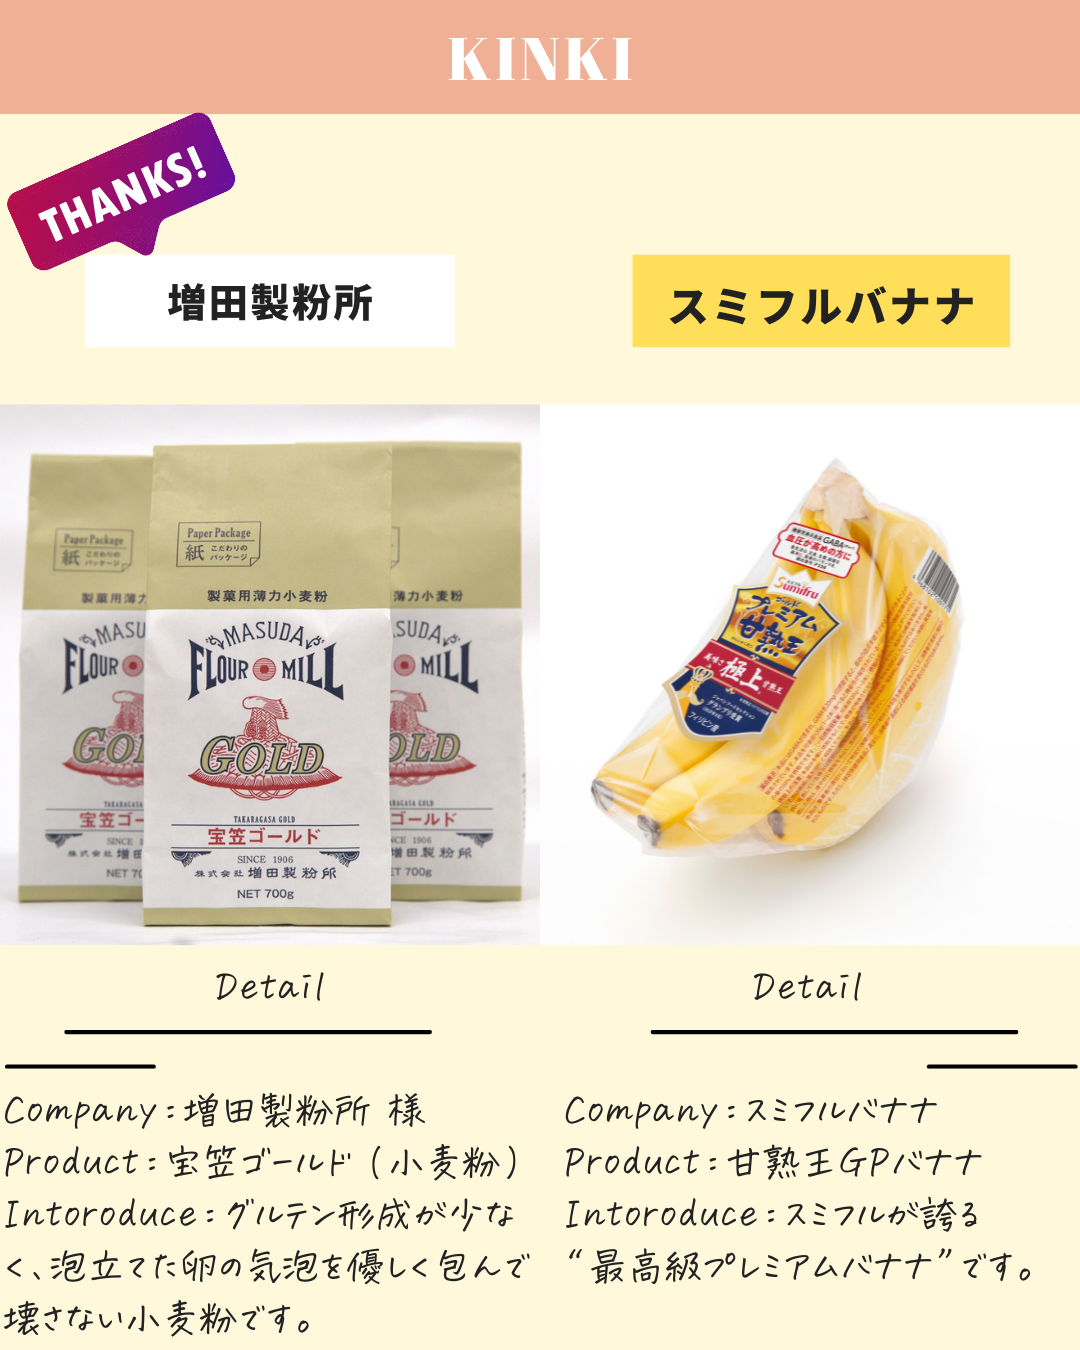 株式会社スミフルジャパン「バナナの王様完熟王」インスタコラボ企画のお知らせ